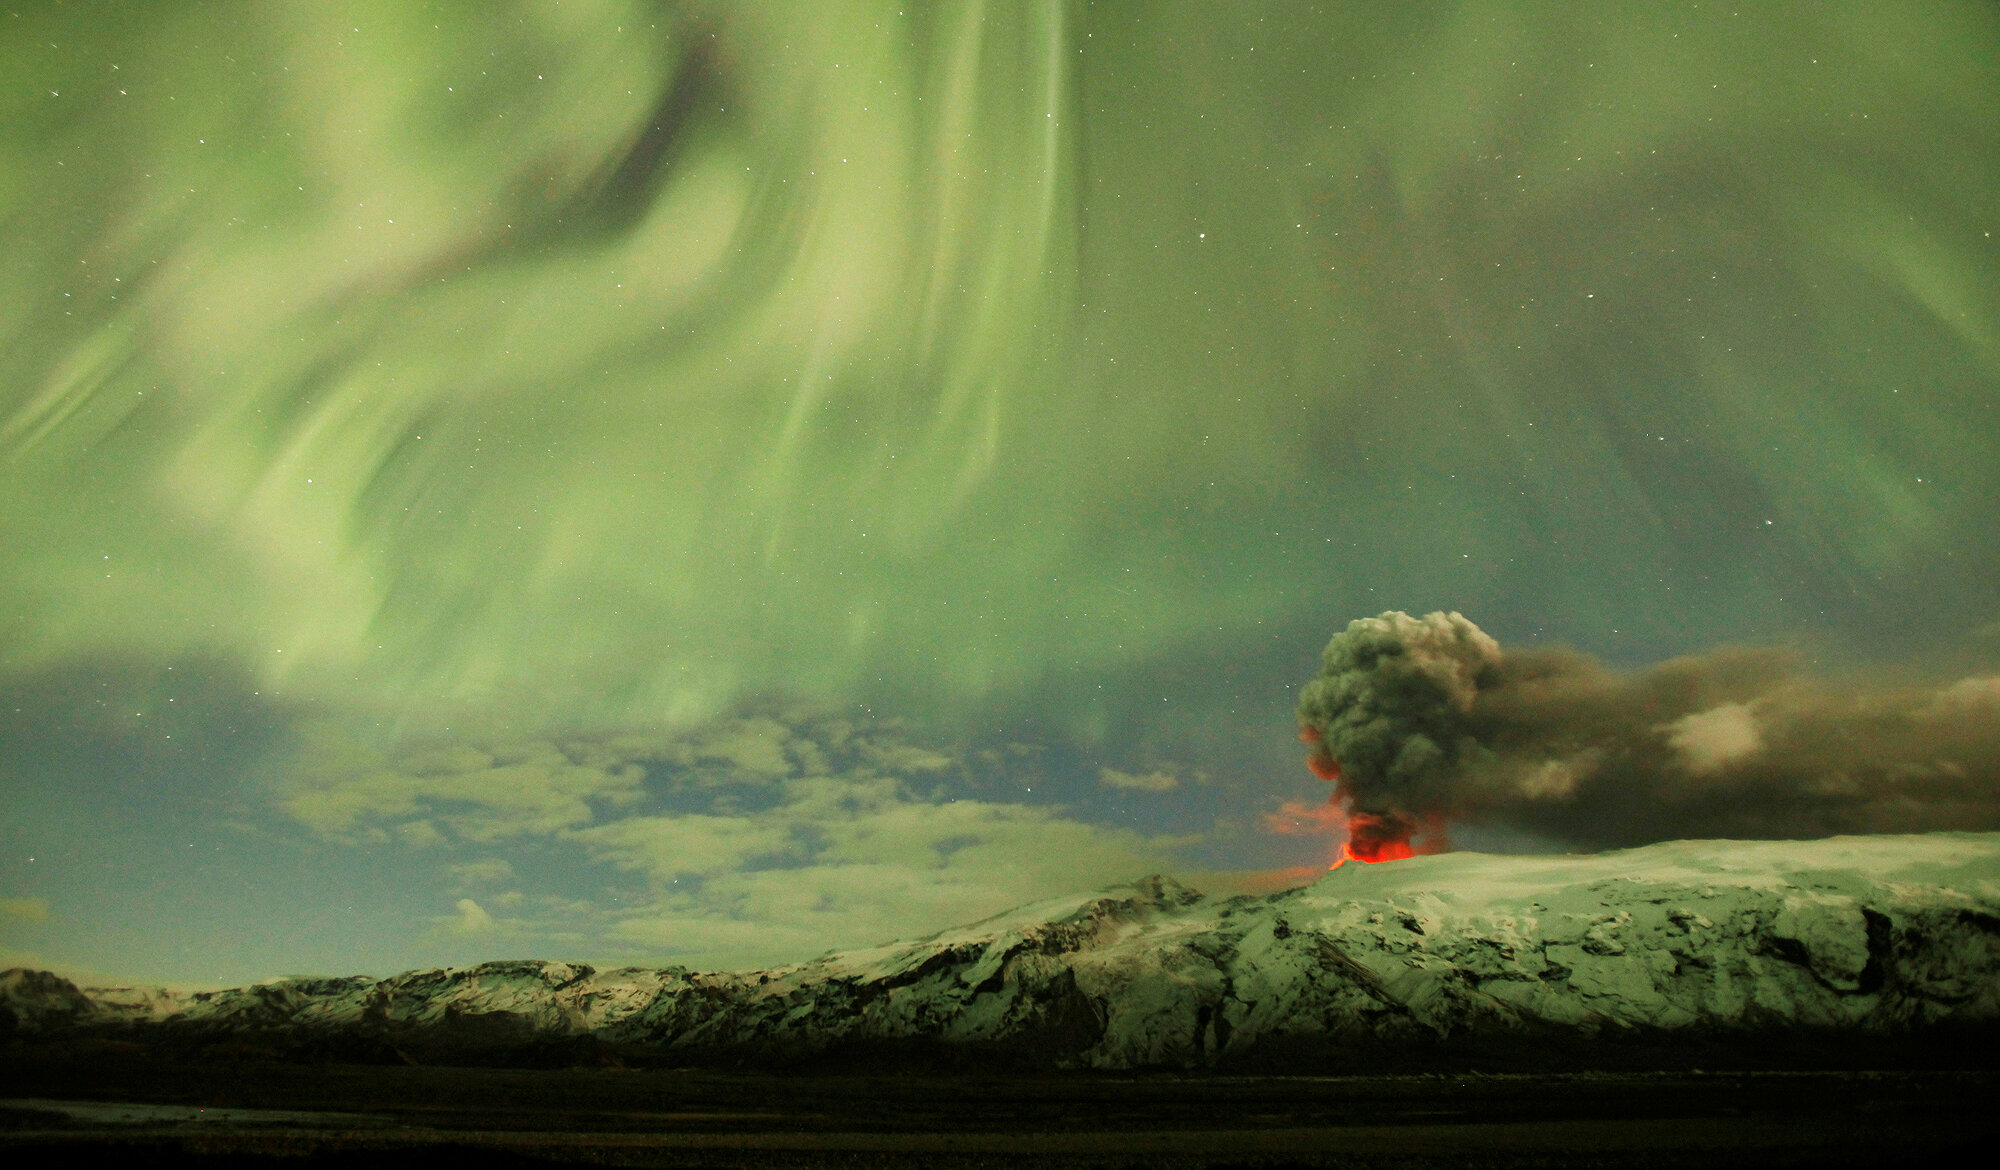 <p>Извержение вулкана Эйяфьядлайекюдль привело к масштабному нарушению движения коммерческих авиарейсов по всей территории северной Европы из-за выбросов пепла. Исландия, 2010 год</p>